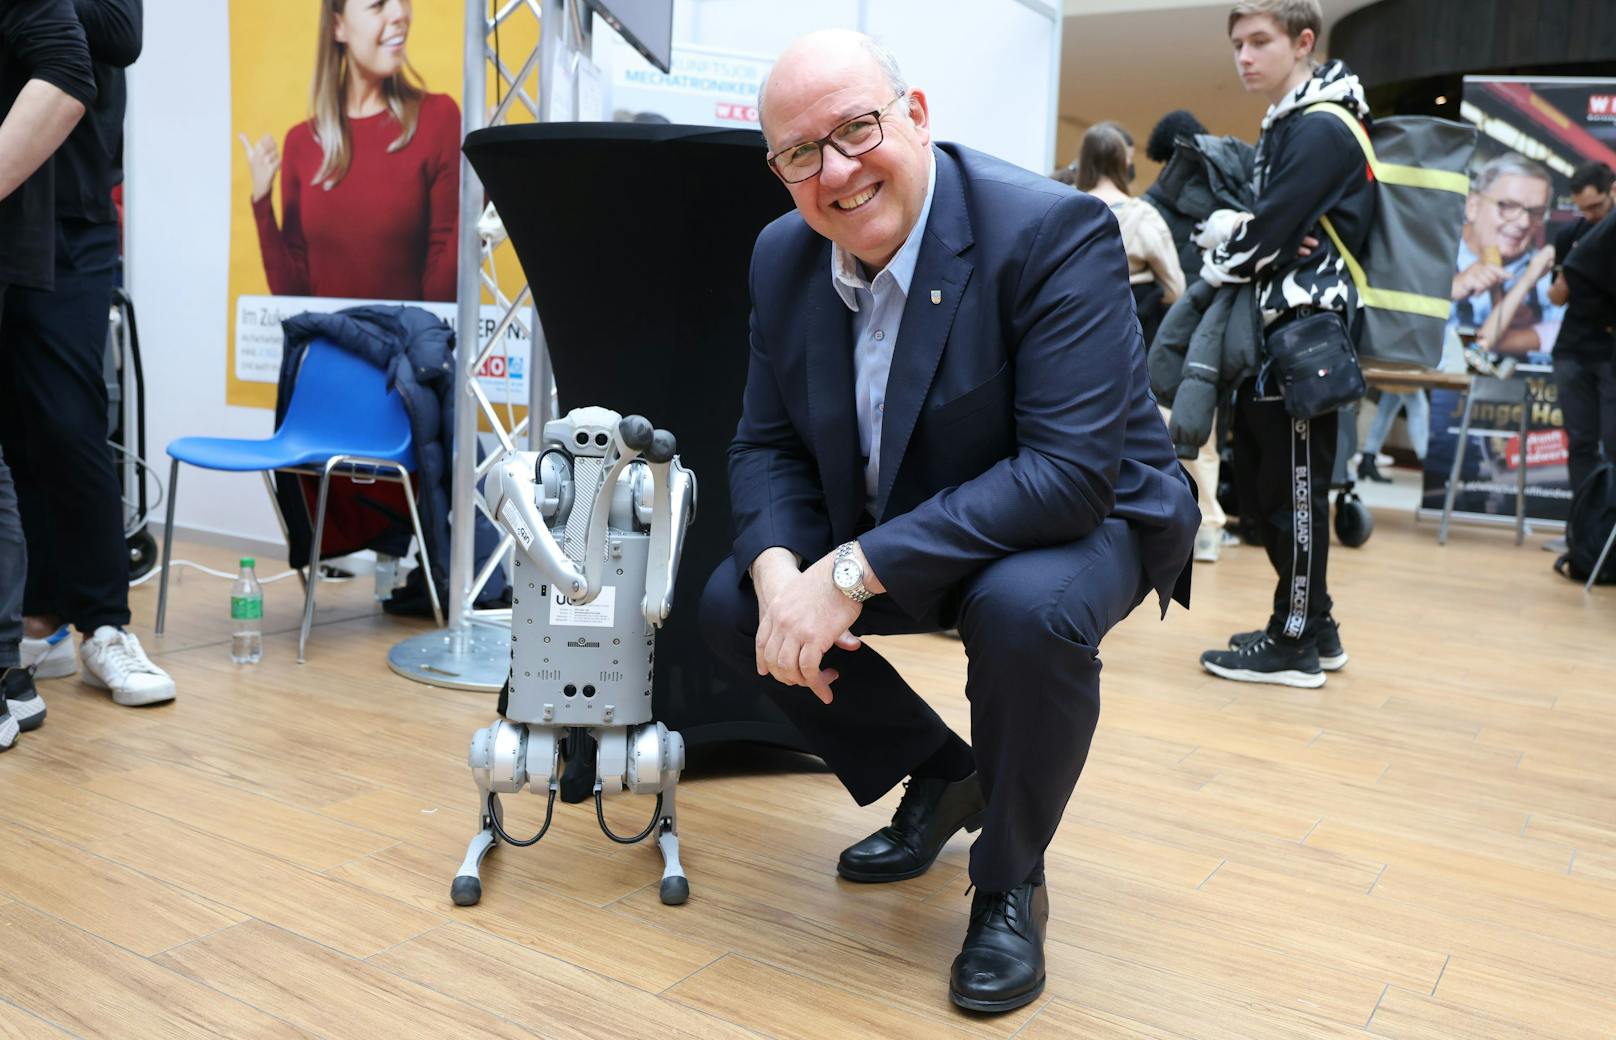 Innungsmeister der Mechatroniker, Peter Merten, mit dem Roboterhund, einer Attraktion des Events.